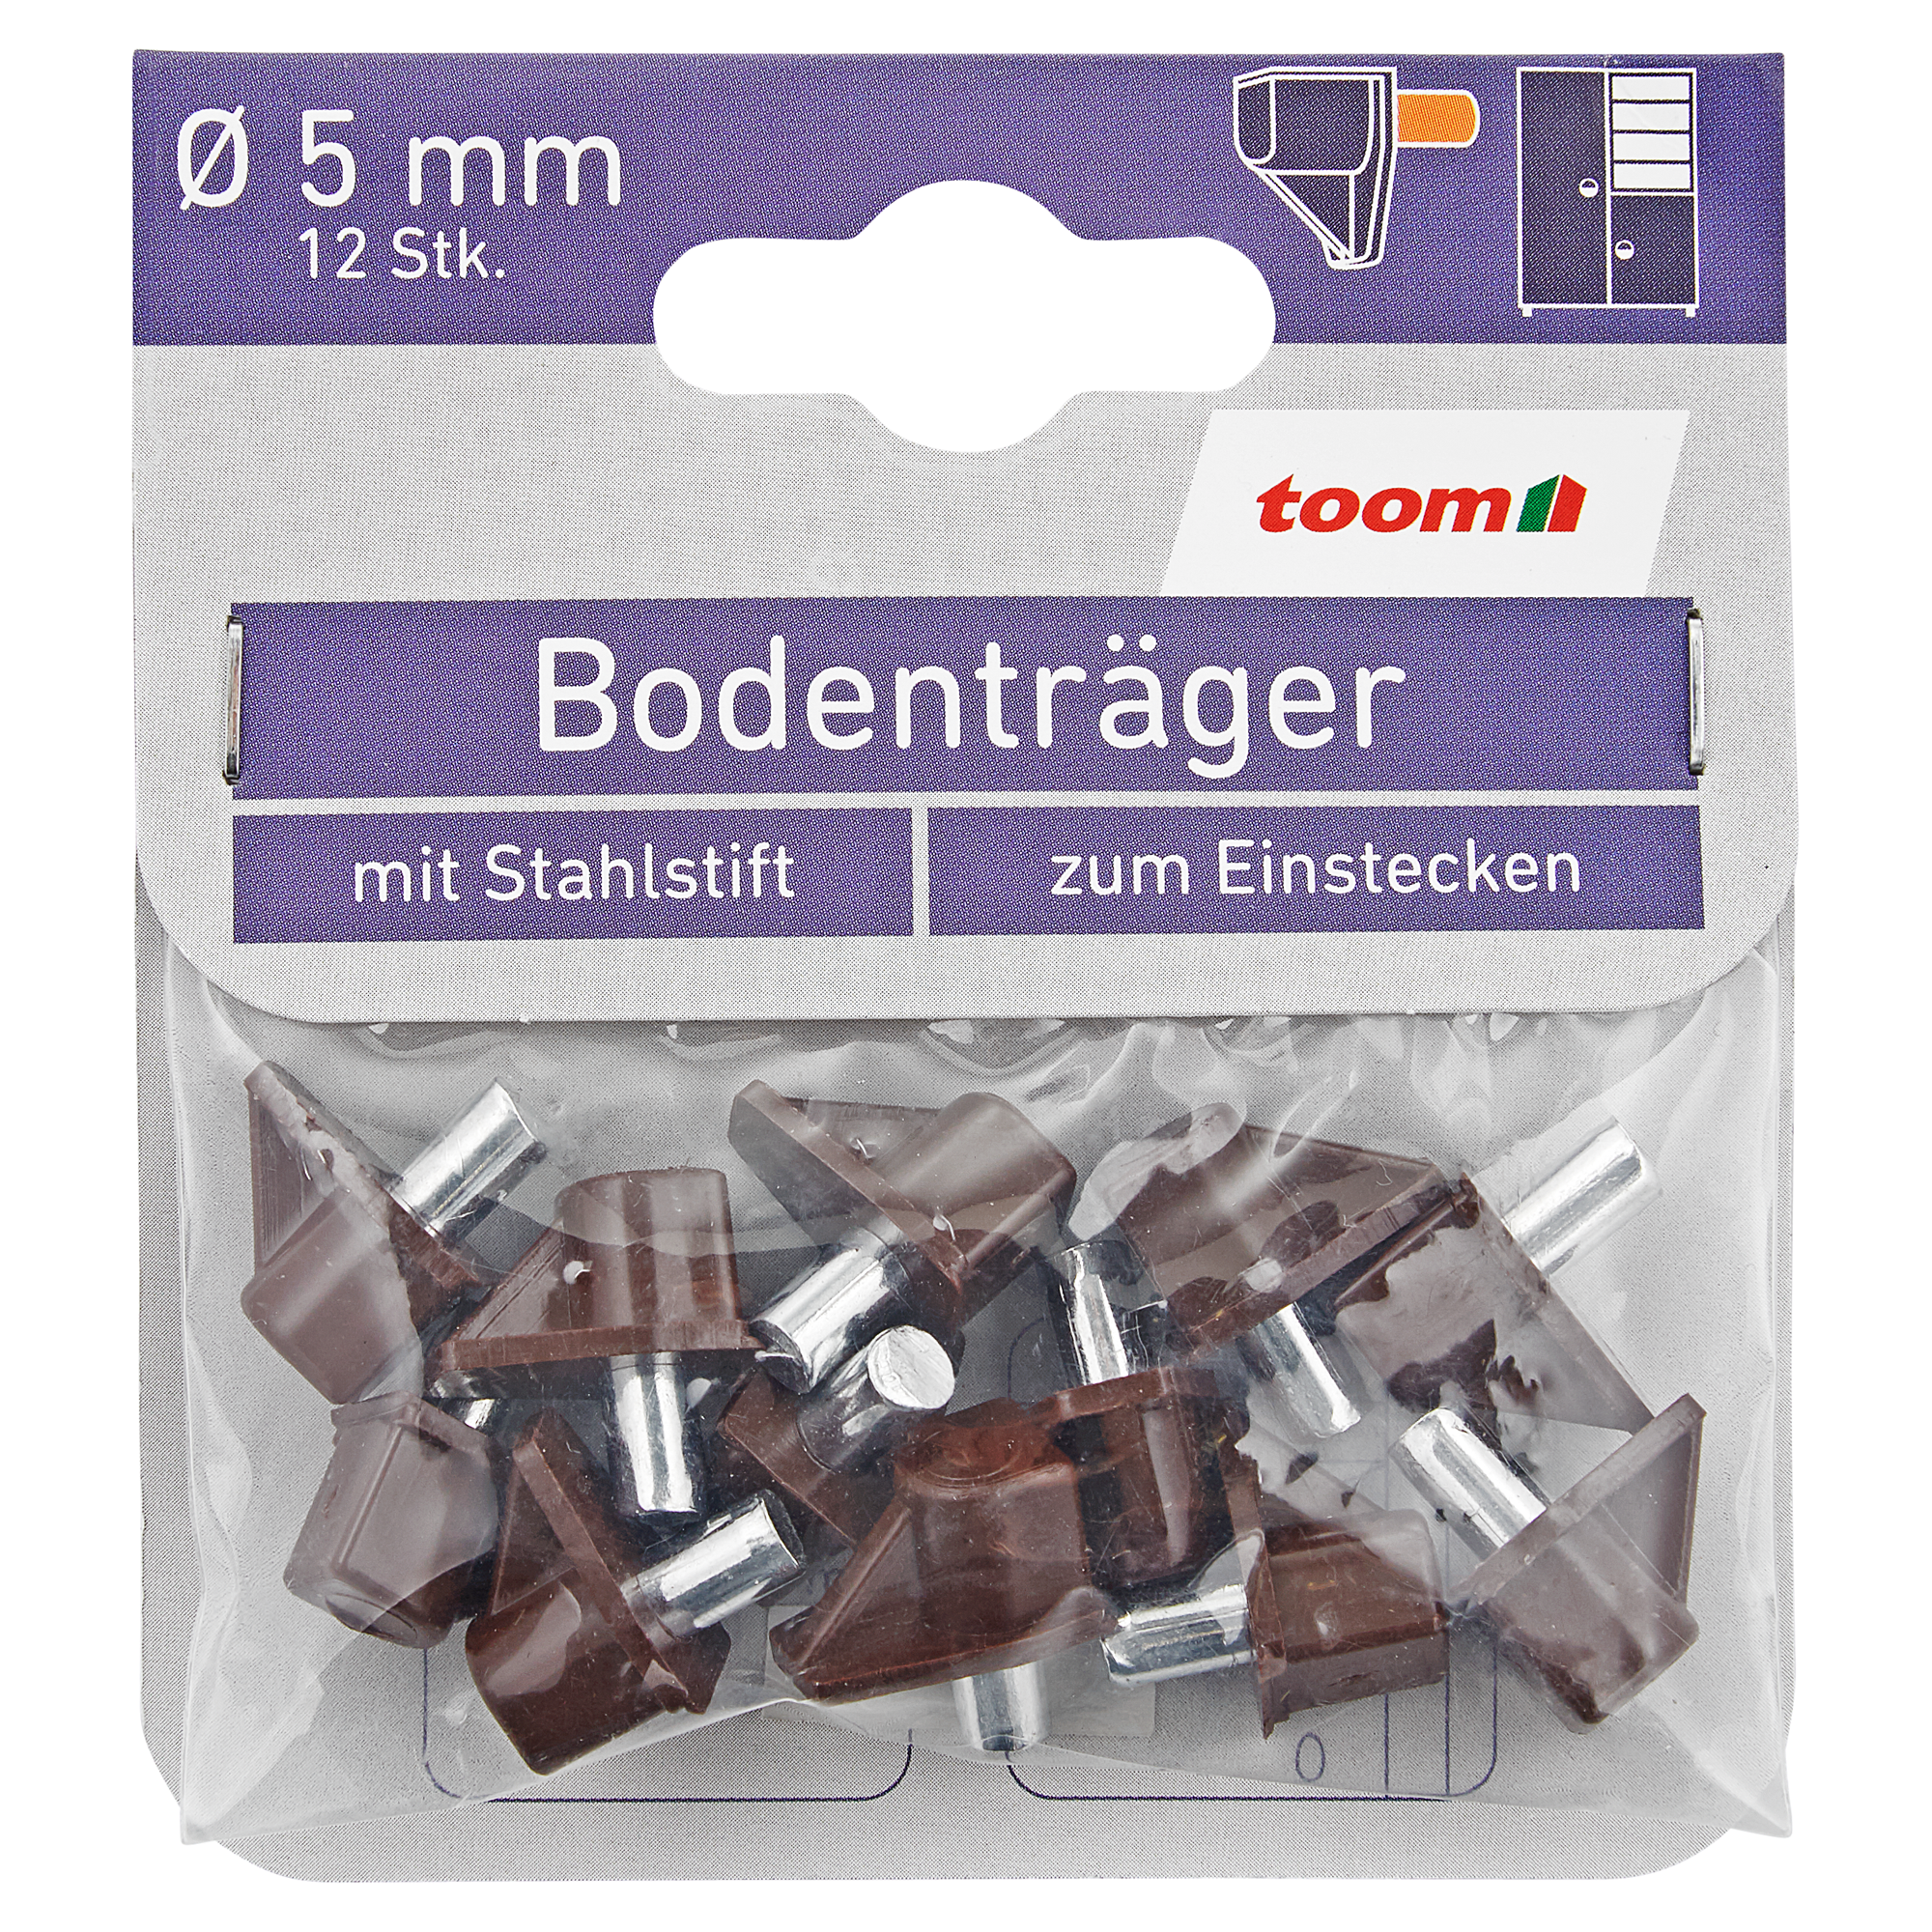 Bodenträger 12 Stück braun Ø 5 mm + product picture